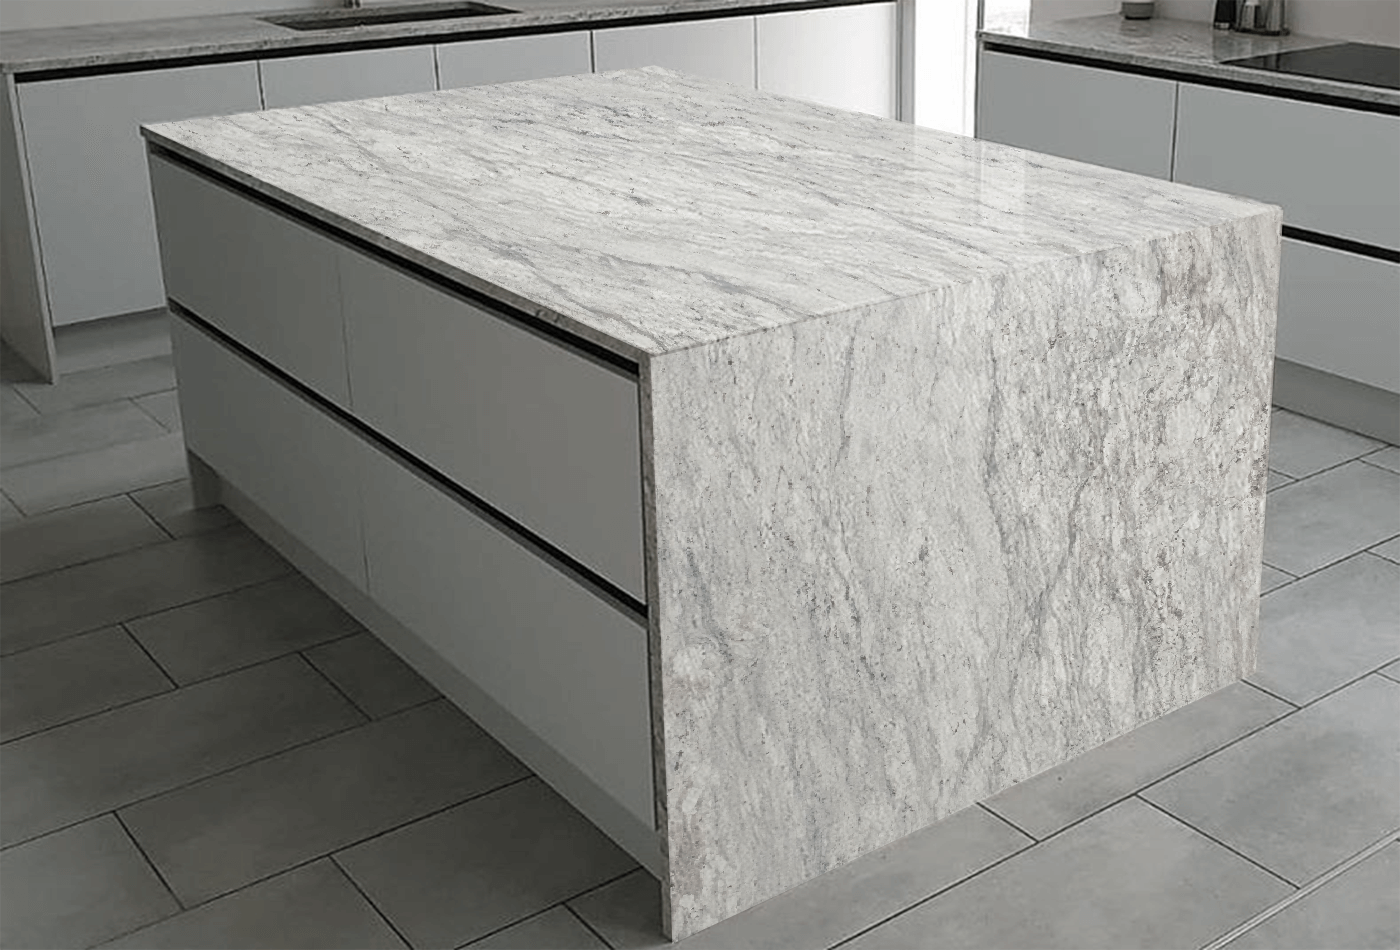 Design Tips for Your White Granite Slabs